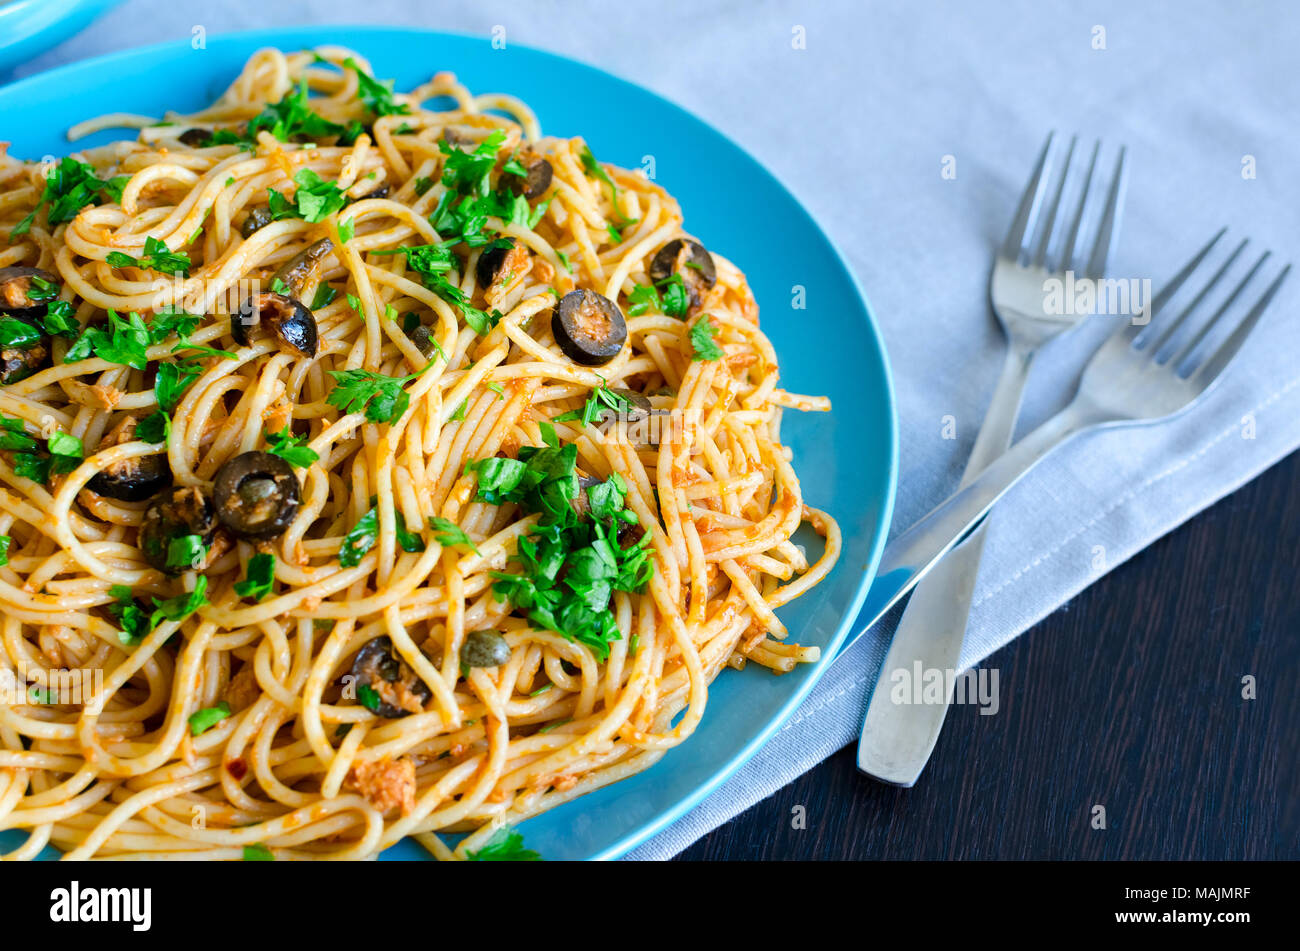 Spaghetti alla Puttanesca - traditionelle italienische Pasta mit schwarzen Oliven, Thunfisch, Sardellen, Kapern und Petersilie. Vegetarisches Essen. Italienische Küche. Stockfoto